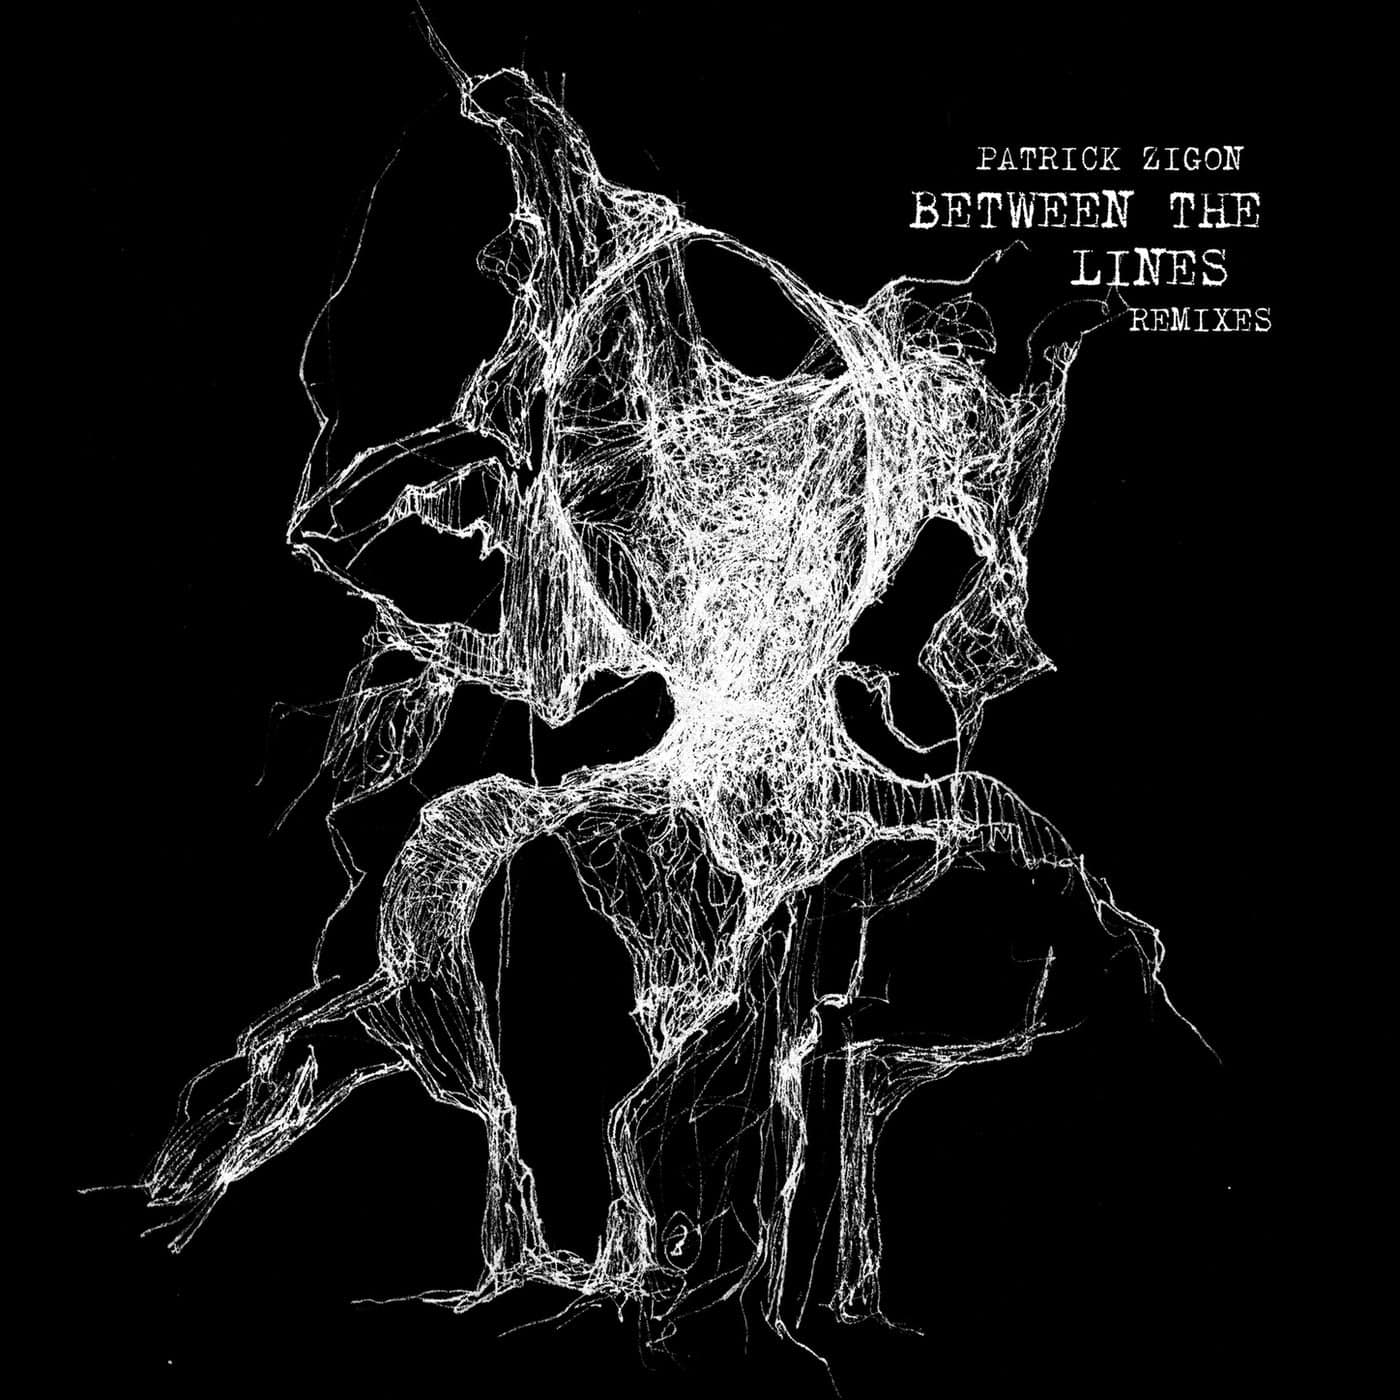 image cover: Patrick Zigon - Between The Lines Remixes / TR023